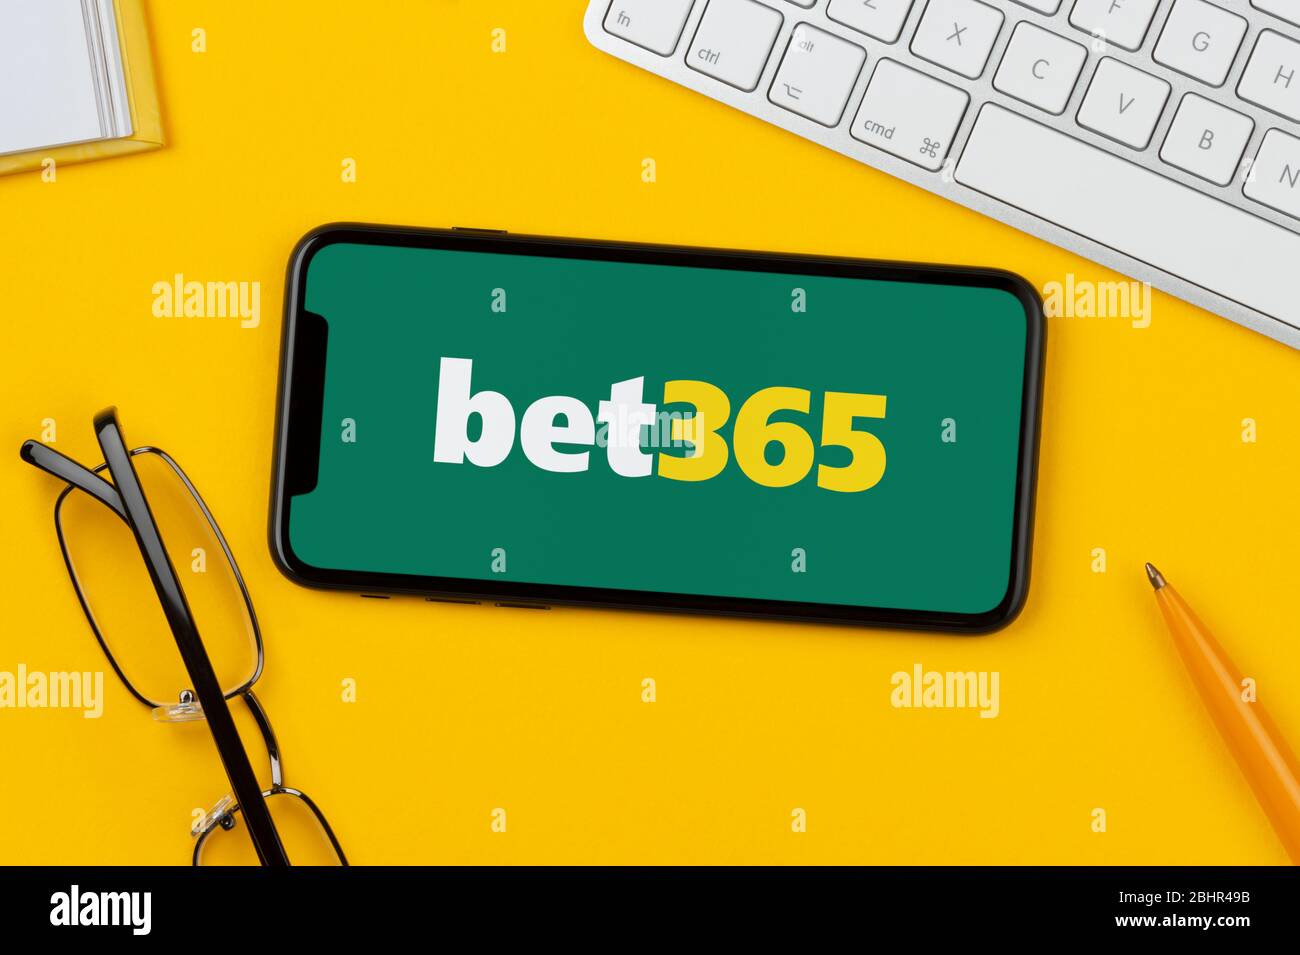 Uno smartphone con il logo Bet365 è posizionato su uno sfondo giallo insieme a tastiera, occhiali, penna e libro (solo per uso editoriale). Foto Stock